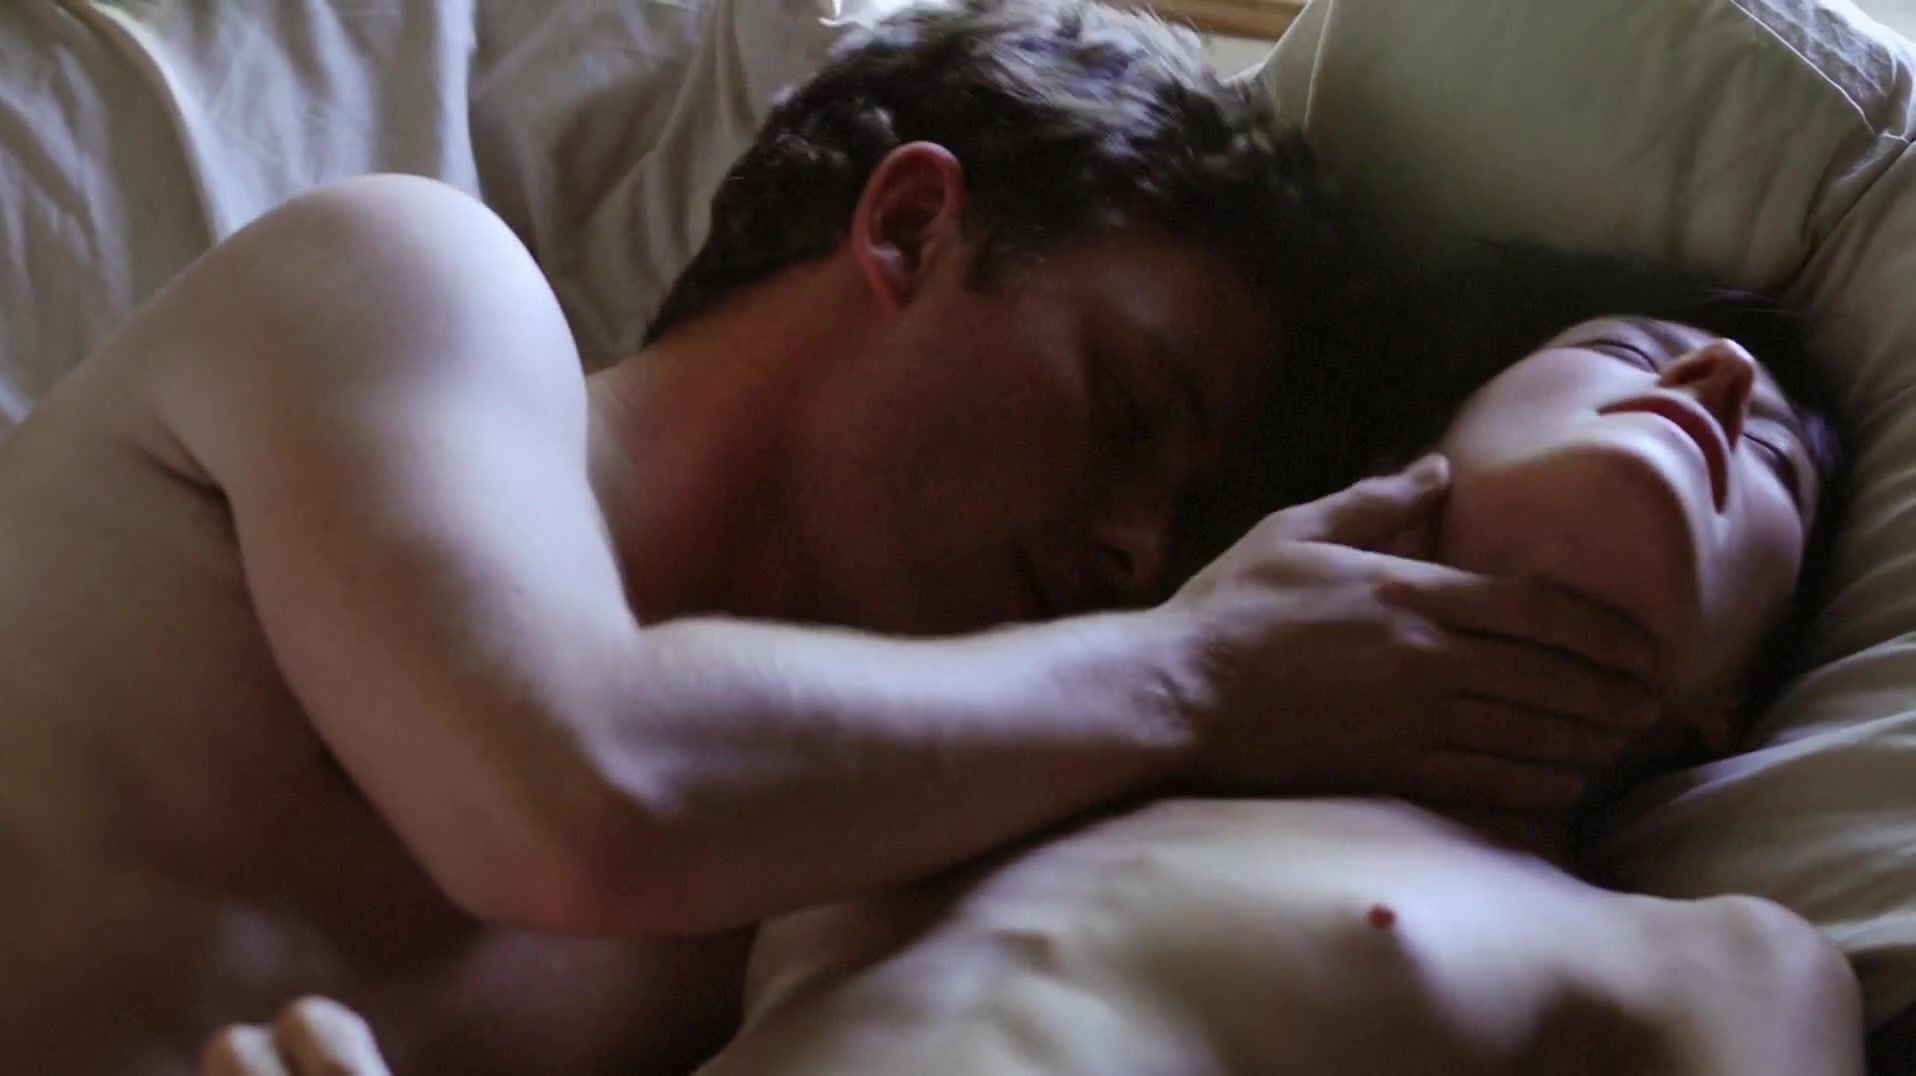 Dirty-Doctor Full Frontal nudity scene of erotic movie "Hide and Seek aka Amorous" Culonas